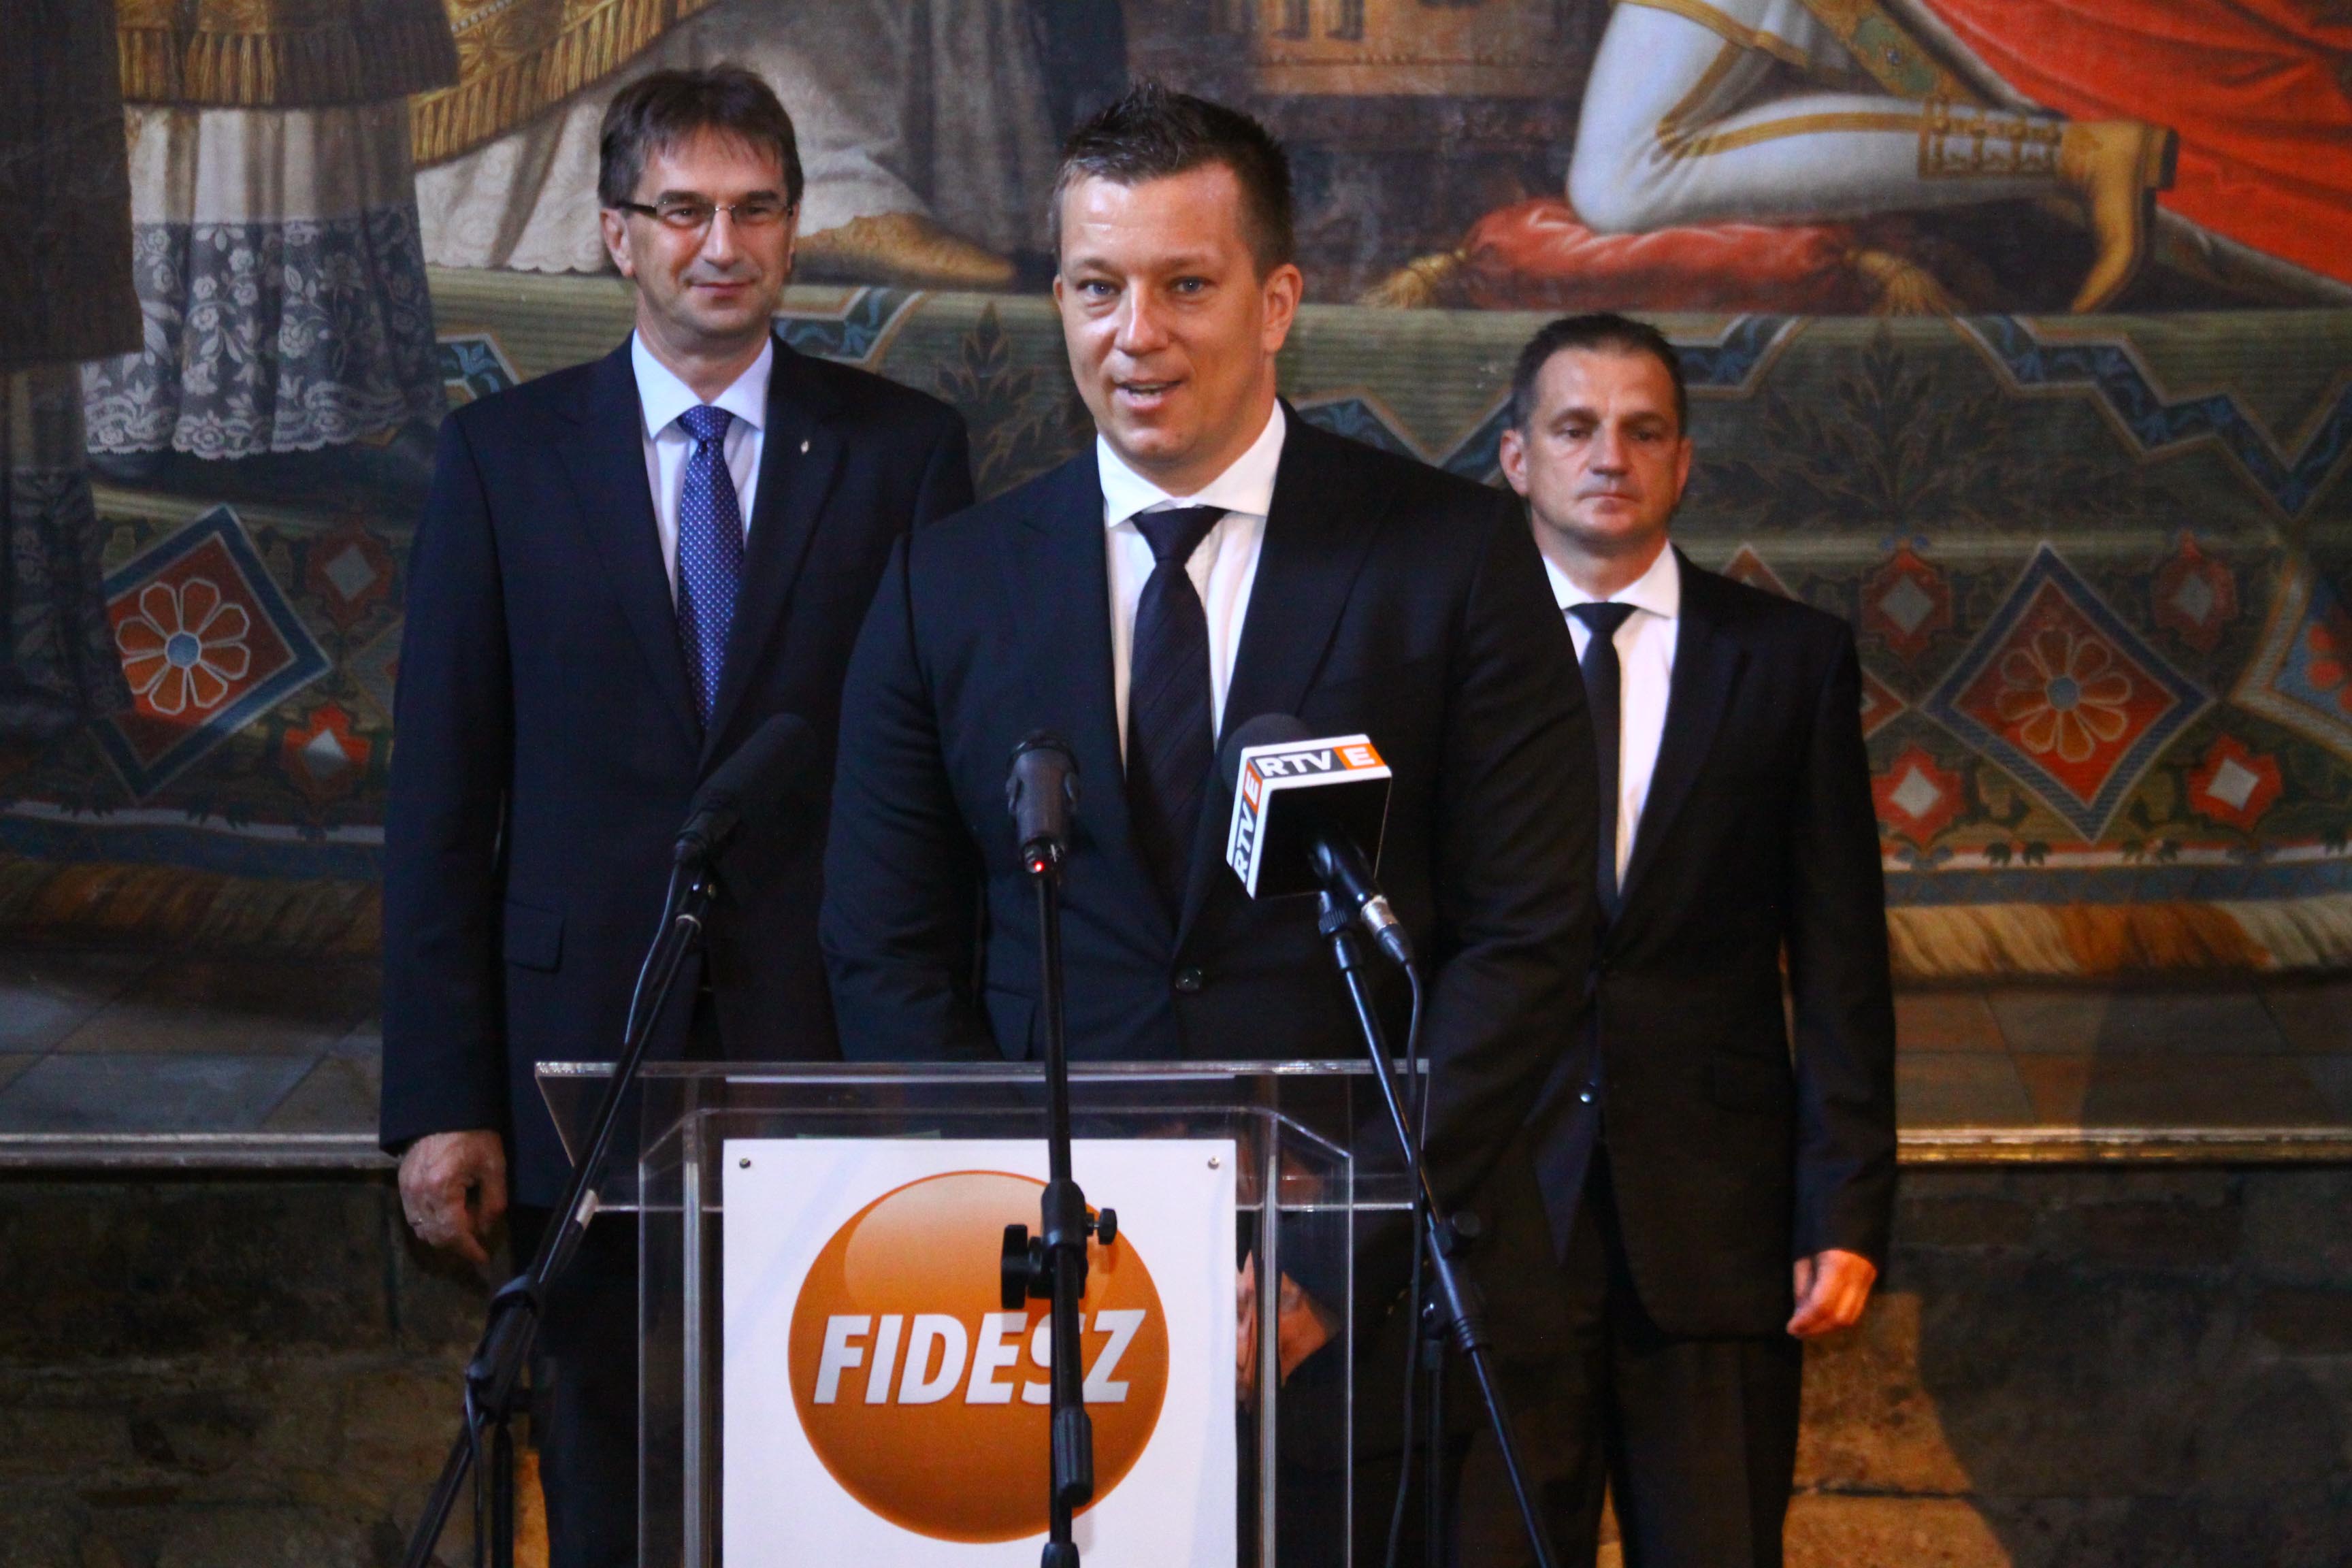 Bemutatkoztak a Fidesz-KDNP képviselő-jelöltjei Esztergomban